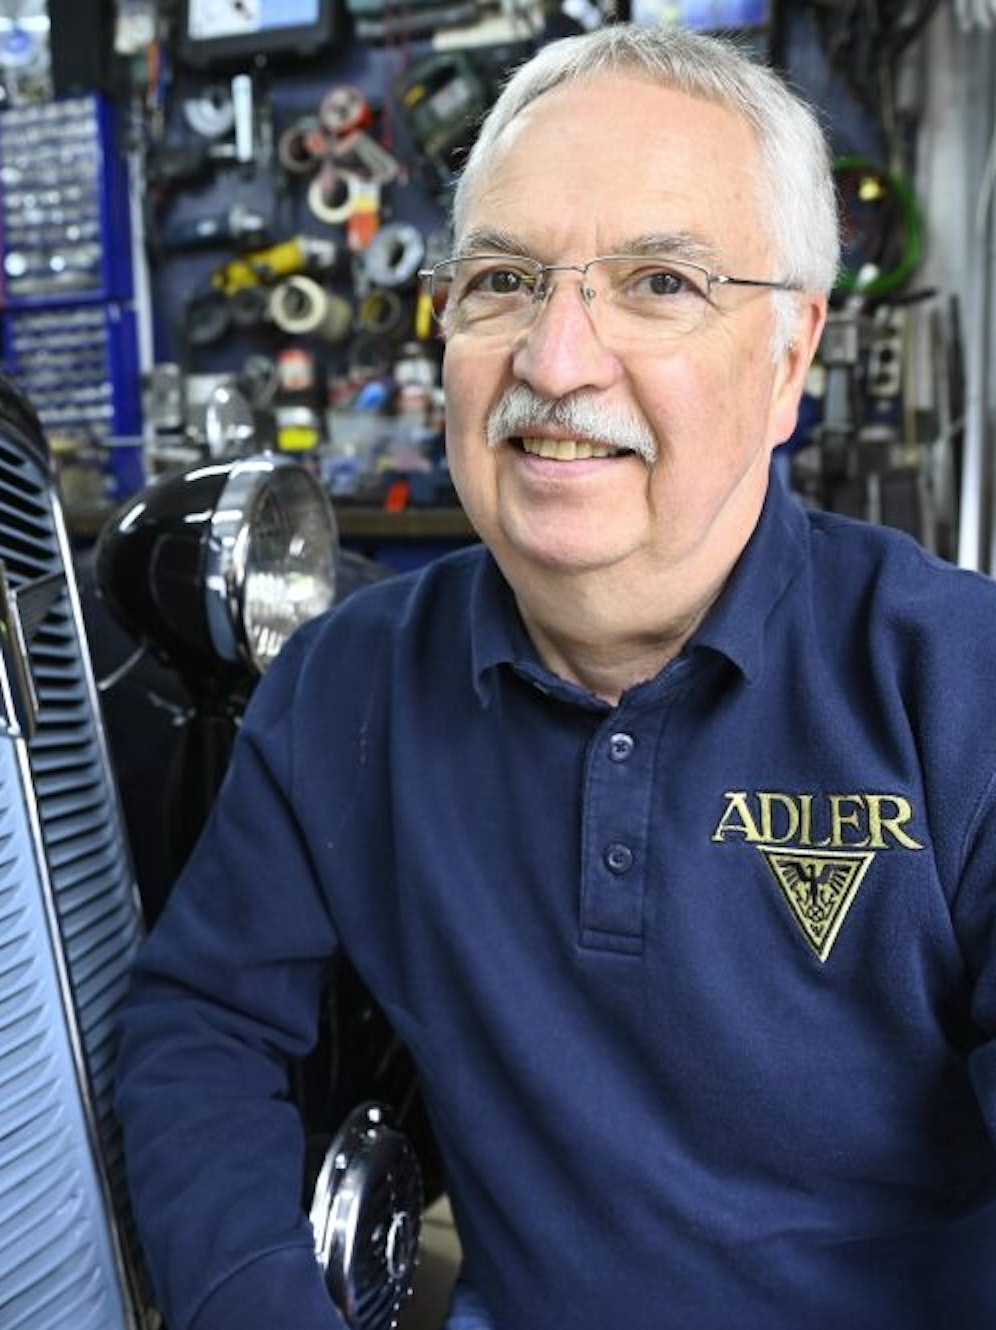 Manfred Schleißing wartet als ausgewiesener Adler-Experte auch Autos anderer Vereinsmitglieder.